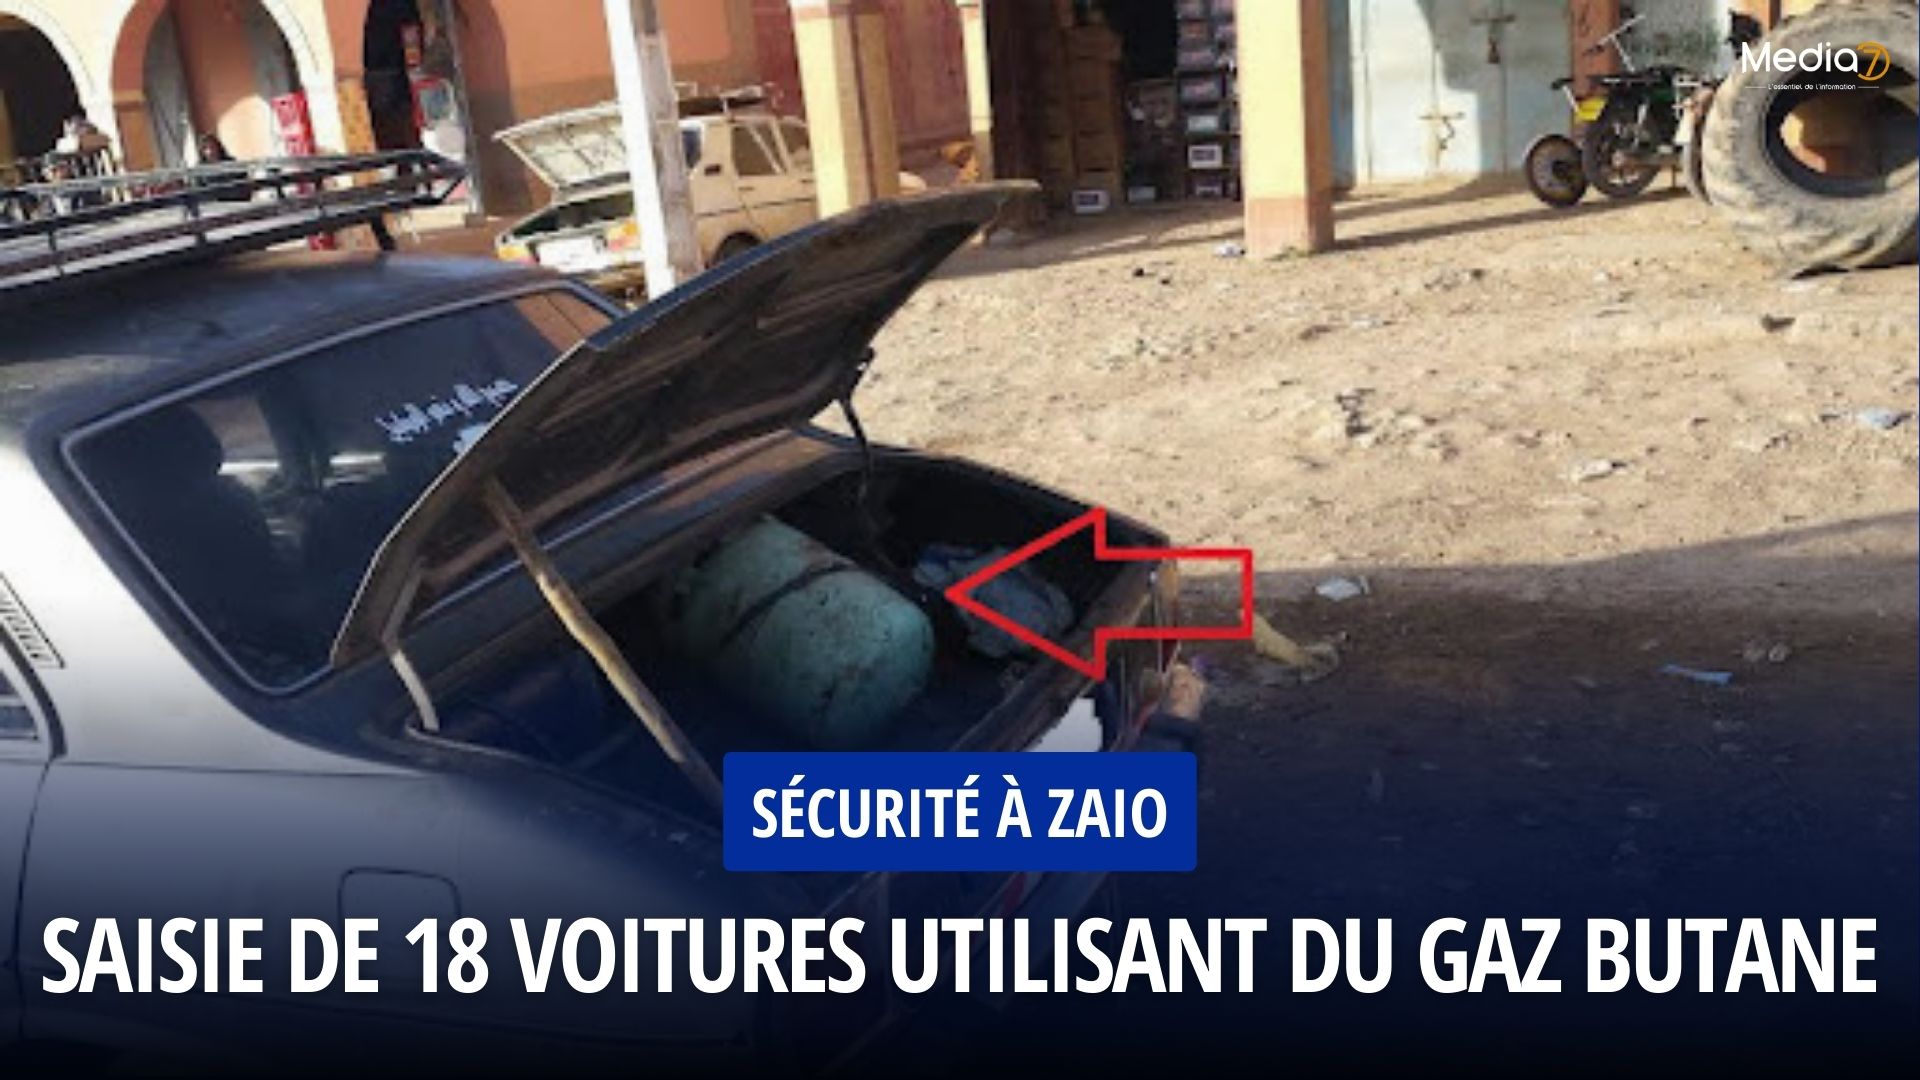 Zaio: Seizure of 18 Cars Using Butane Gas